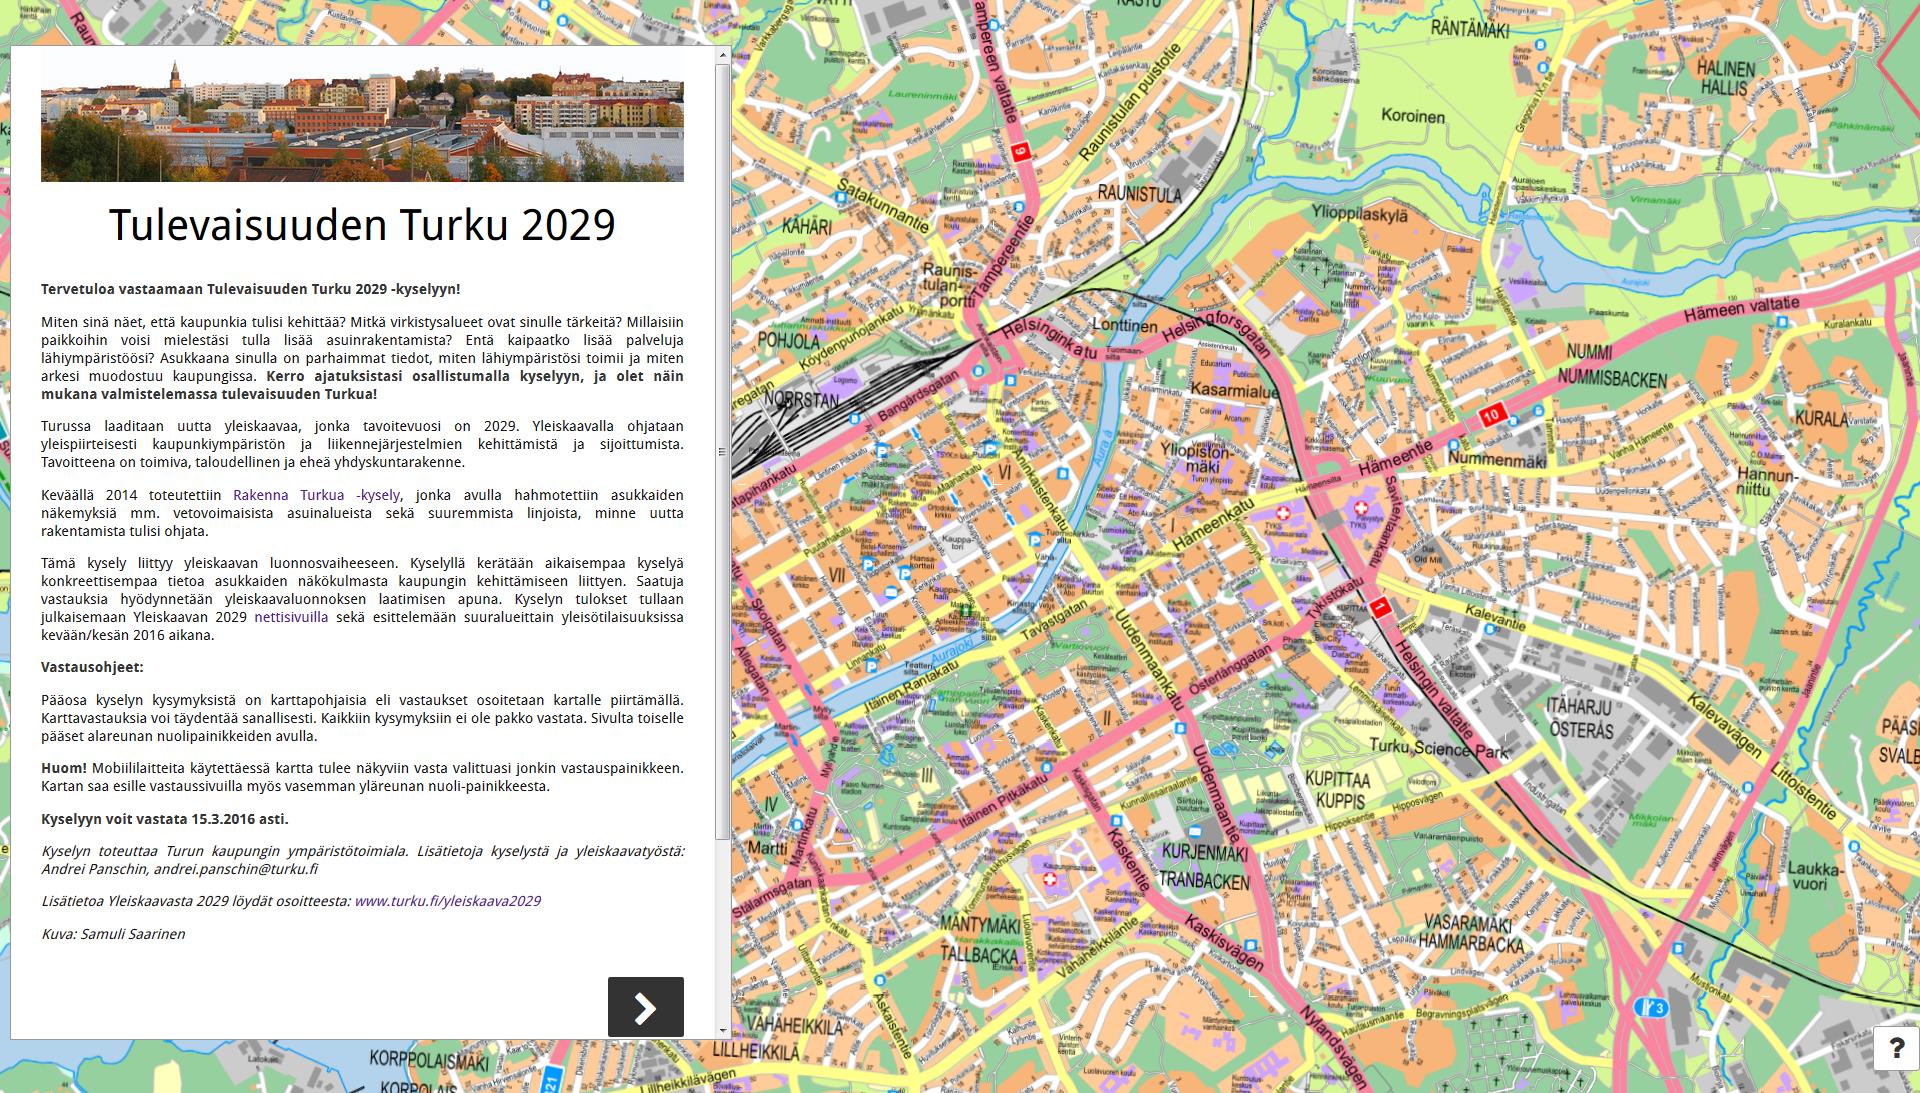 Tulevaisuuden Turku 2029 -kysely Kysely liittyy Yleiskaavan 2029 luonnosvaiheeseen Kysely oli avoinna 15.2.-15.3.